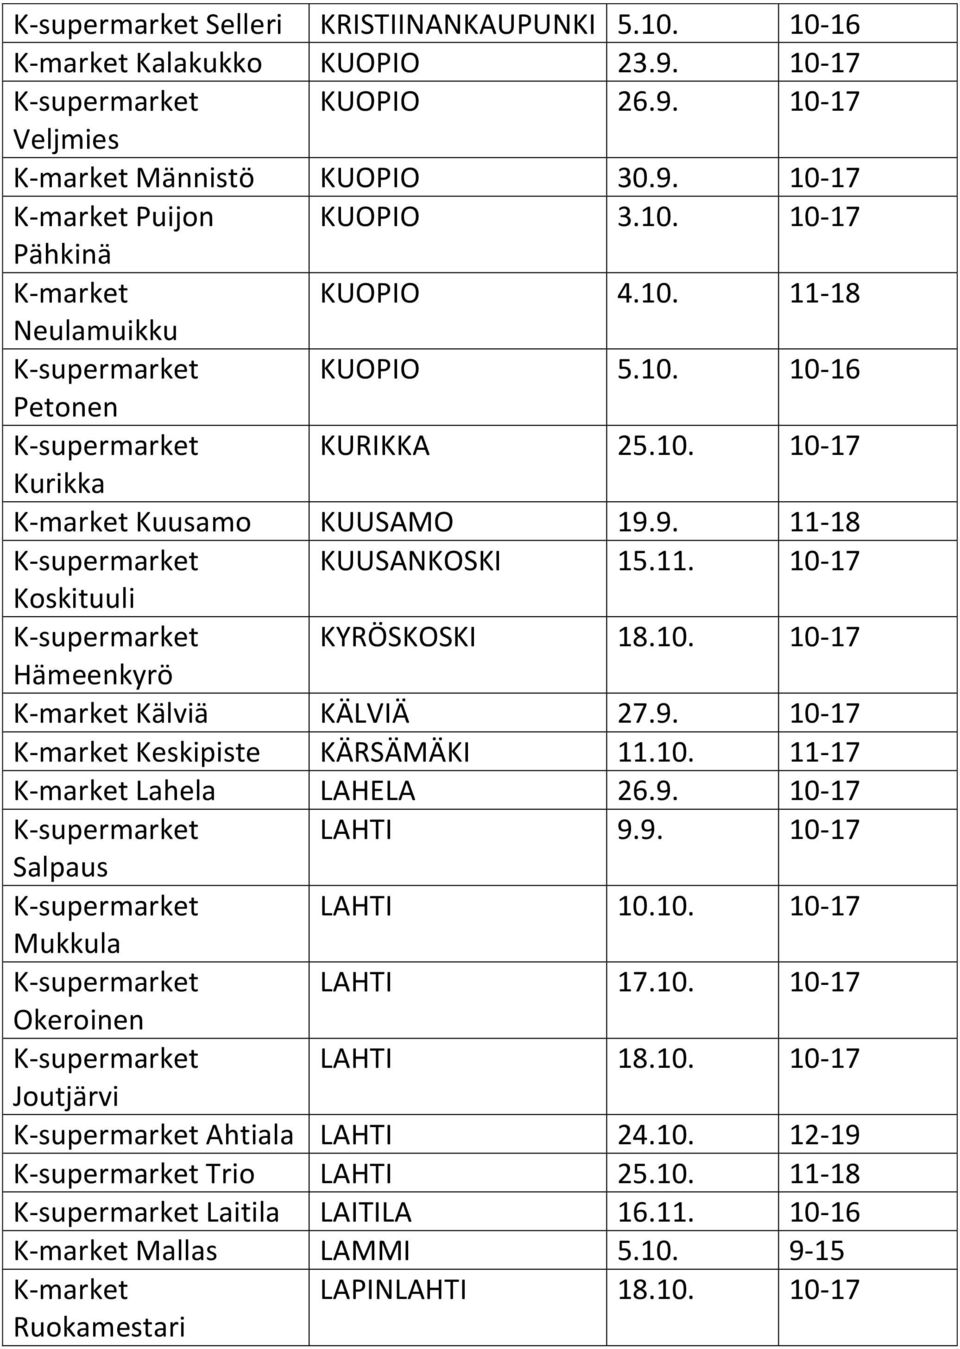 10. 10-17 Hämeenkyrö K-market Kälviä KÄLVIÄ 27.9. 10-17 K-market Keskipiste KÄRSÄMÄKI 11.10. 11-17 K-market Lahela LAHELA 26.9. 10-17 K-supermarket LAHTI 9.9. 10-17 Salpaus K-supermarket LAHTI 10.10. 10-17 Mukkula K-supermarket LAHTI 17.